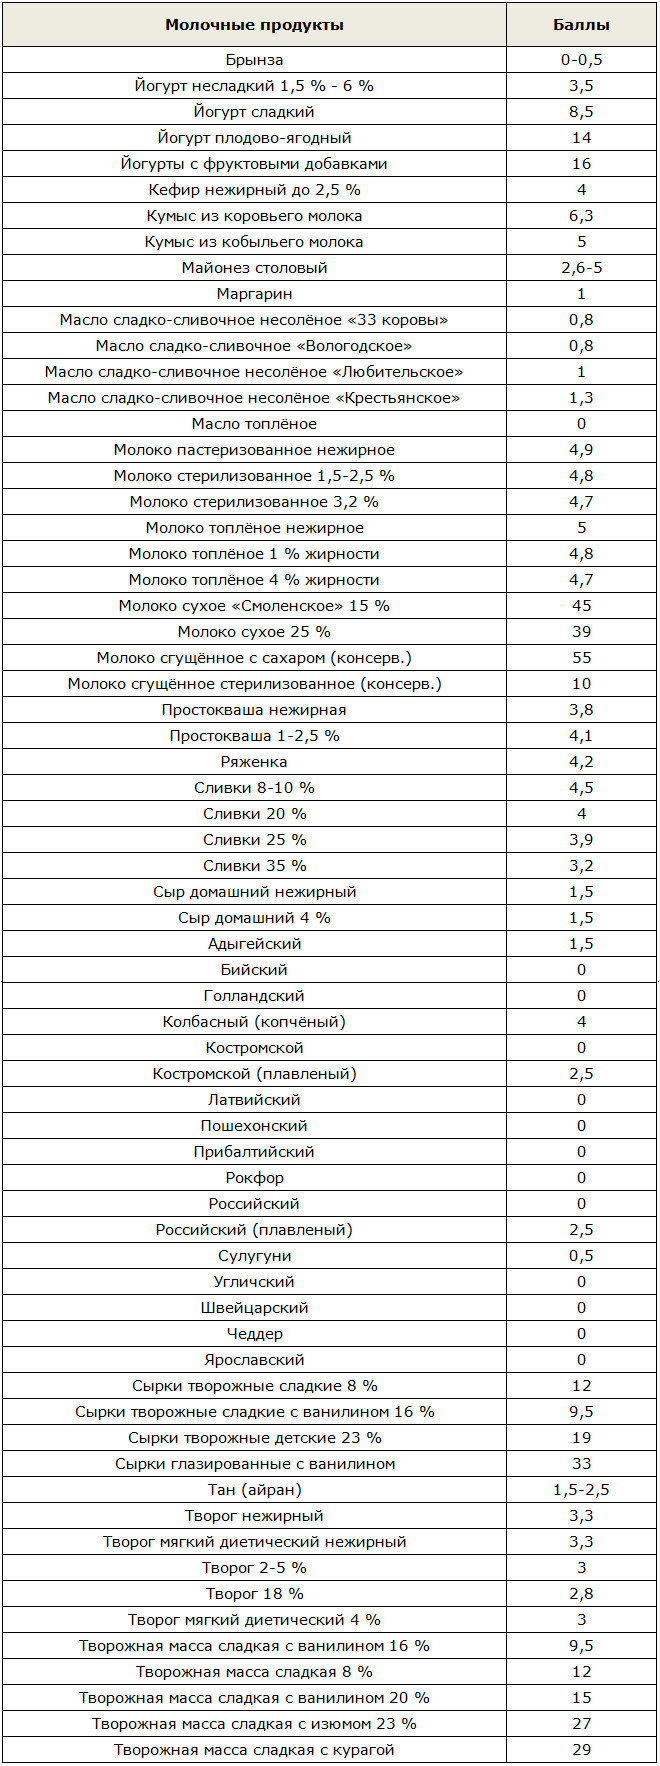 Таблица баллов в кремлёвской диете молочных продуктов